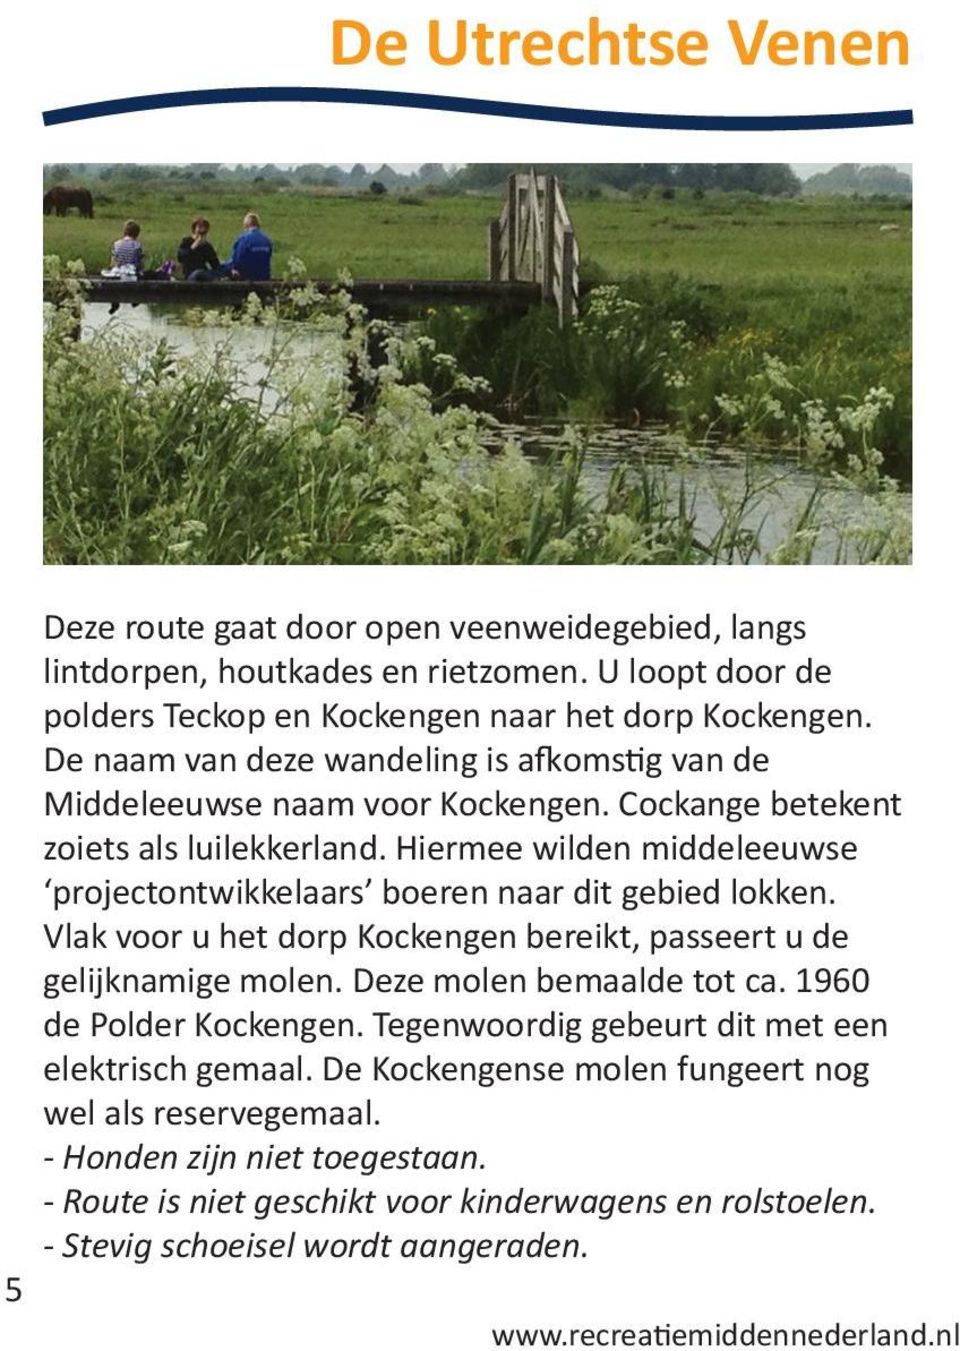 Hiermee wilden middeleeuwse projectontwikkelaars boeren naar dit gebied lokken. Vlak voor u het dorp Kockengen bereikt, passeert u de gelijknamige molen. Deze molen bemaalde tot ca.